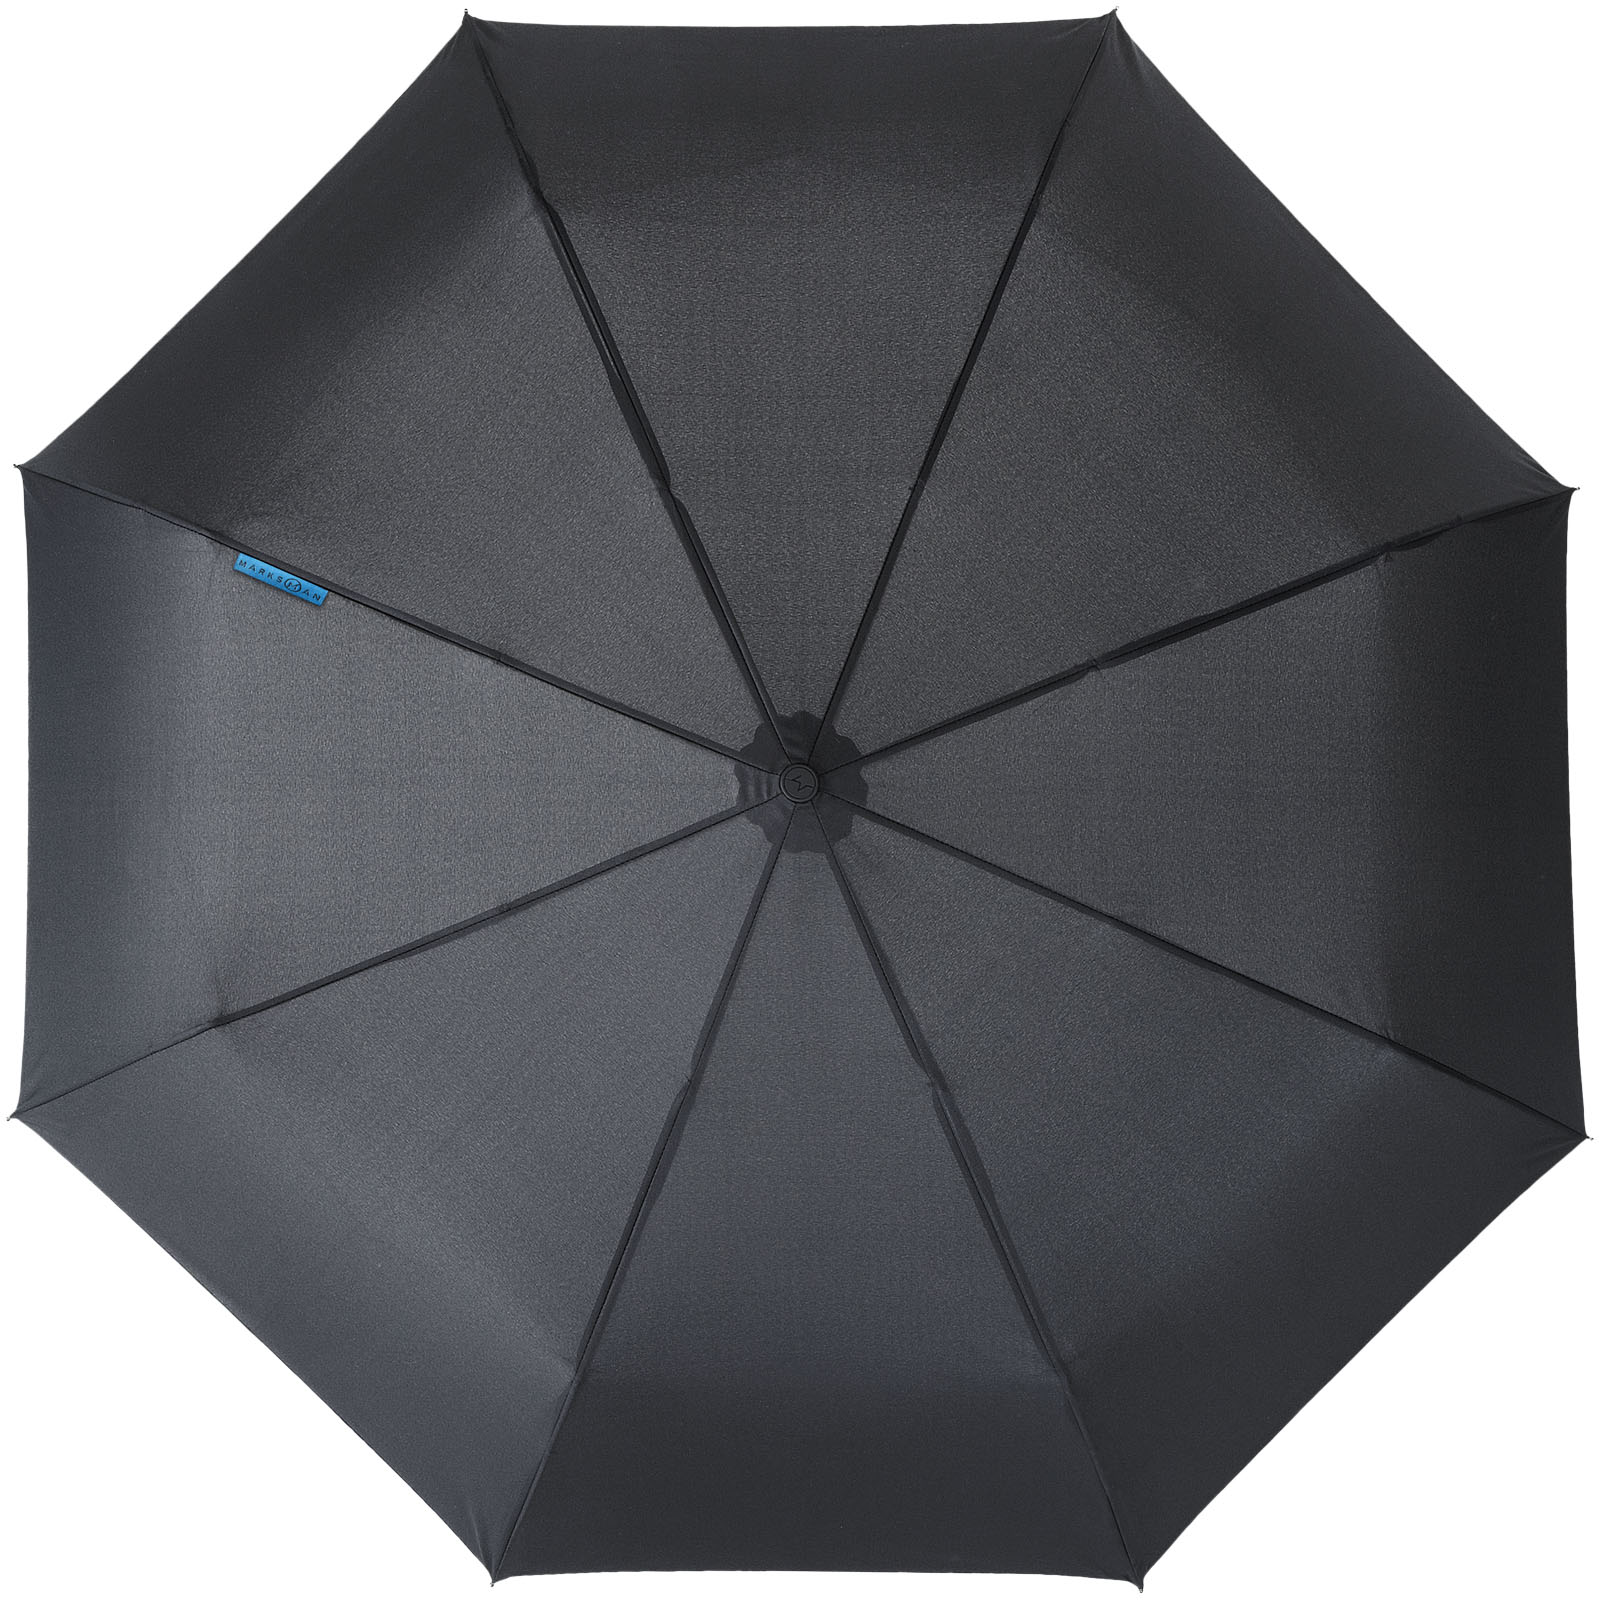 Advertising Folding Umbrellas - Trav 21.5